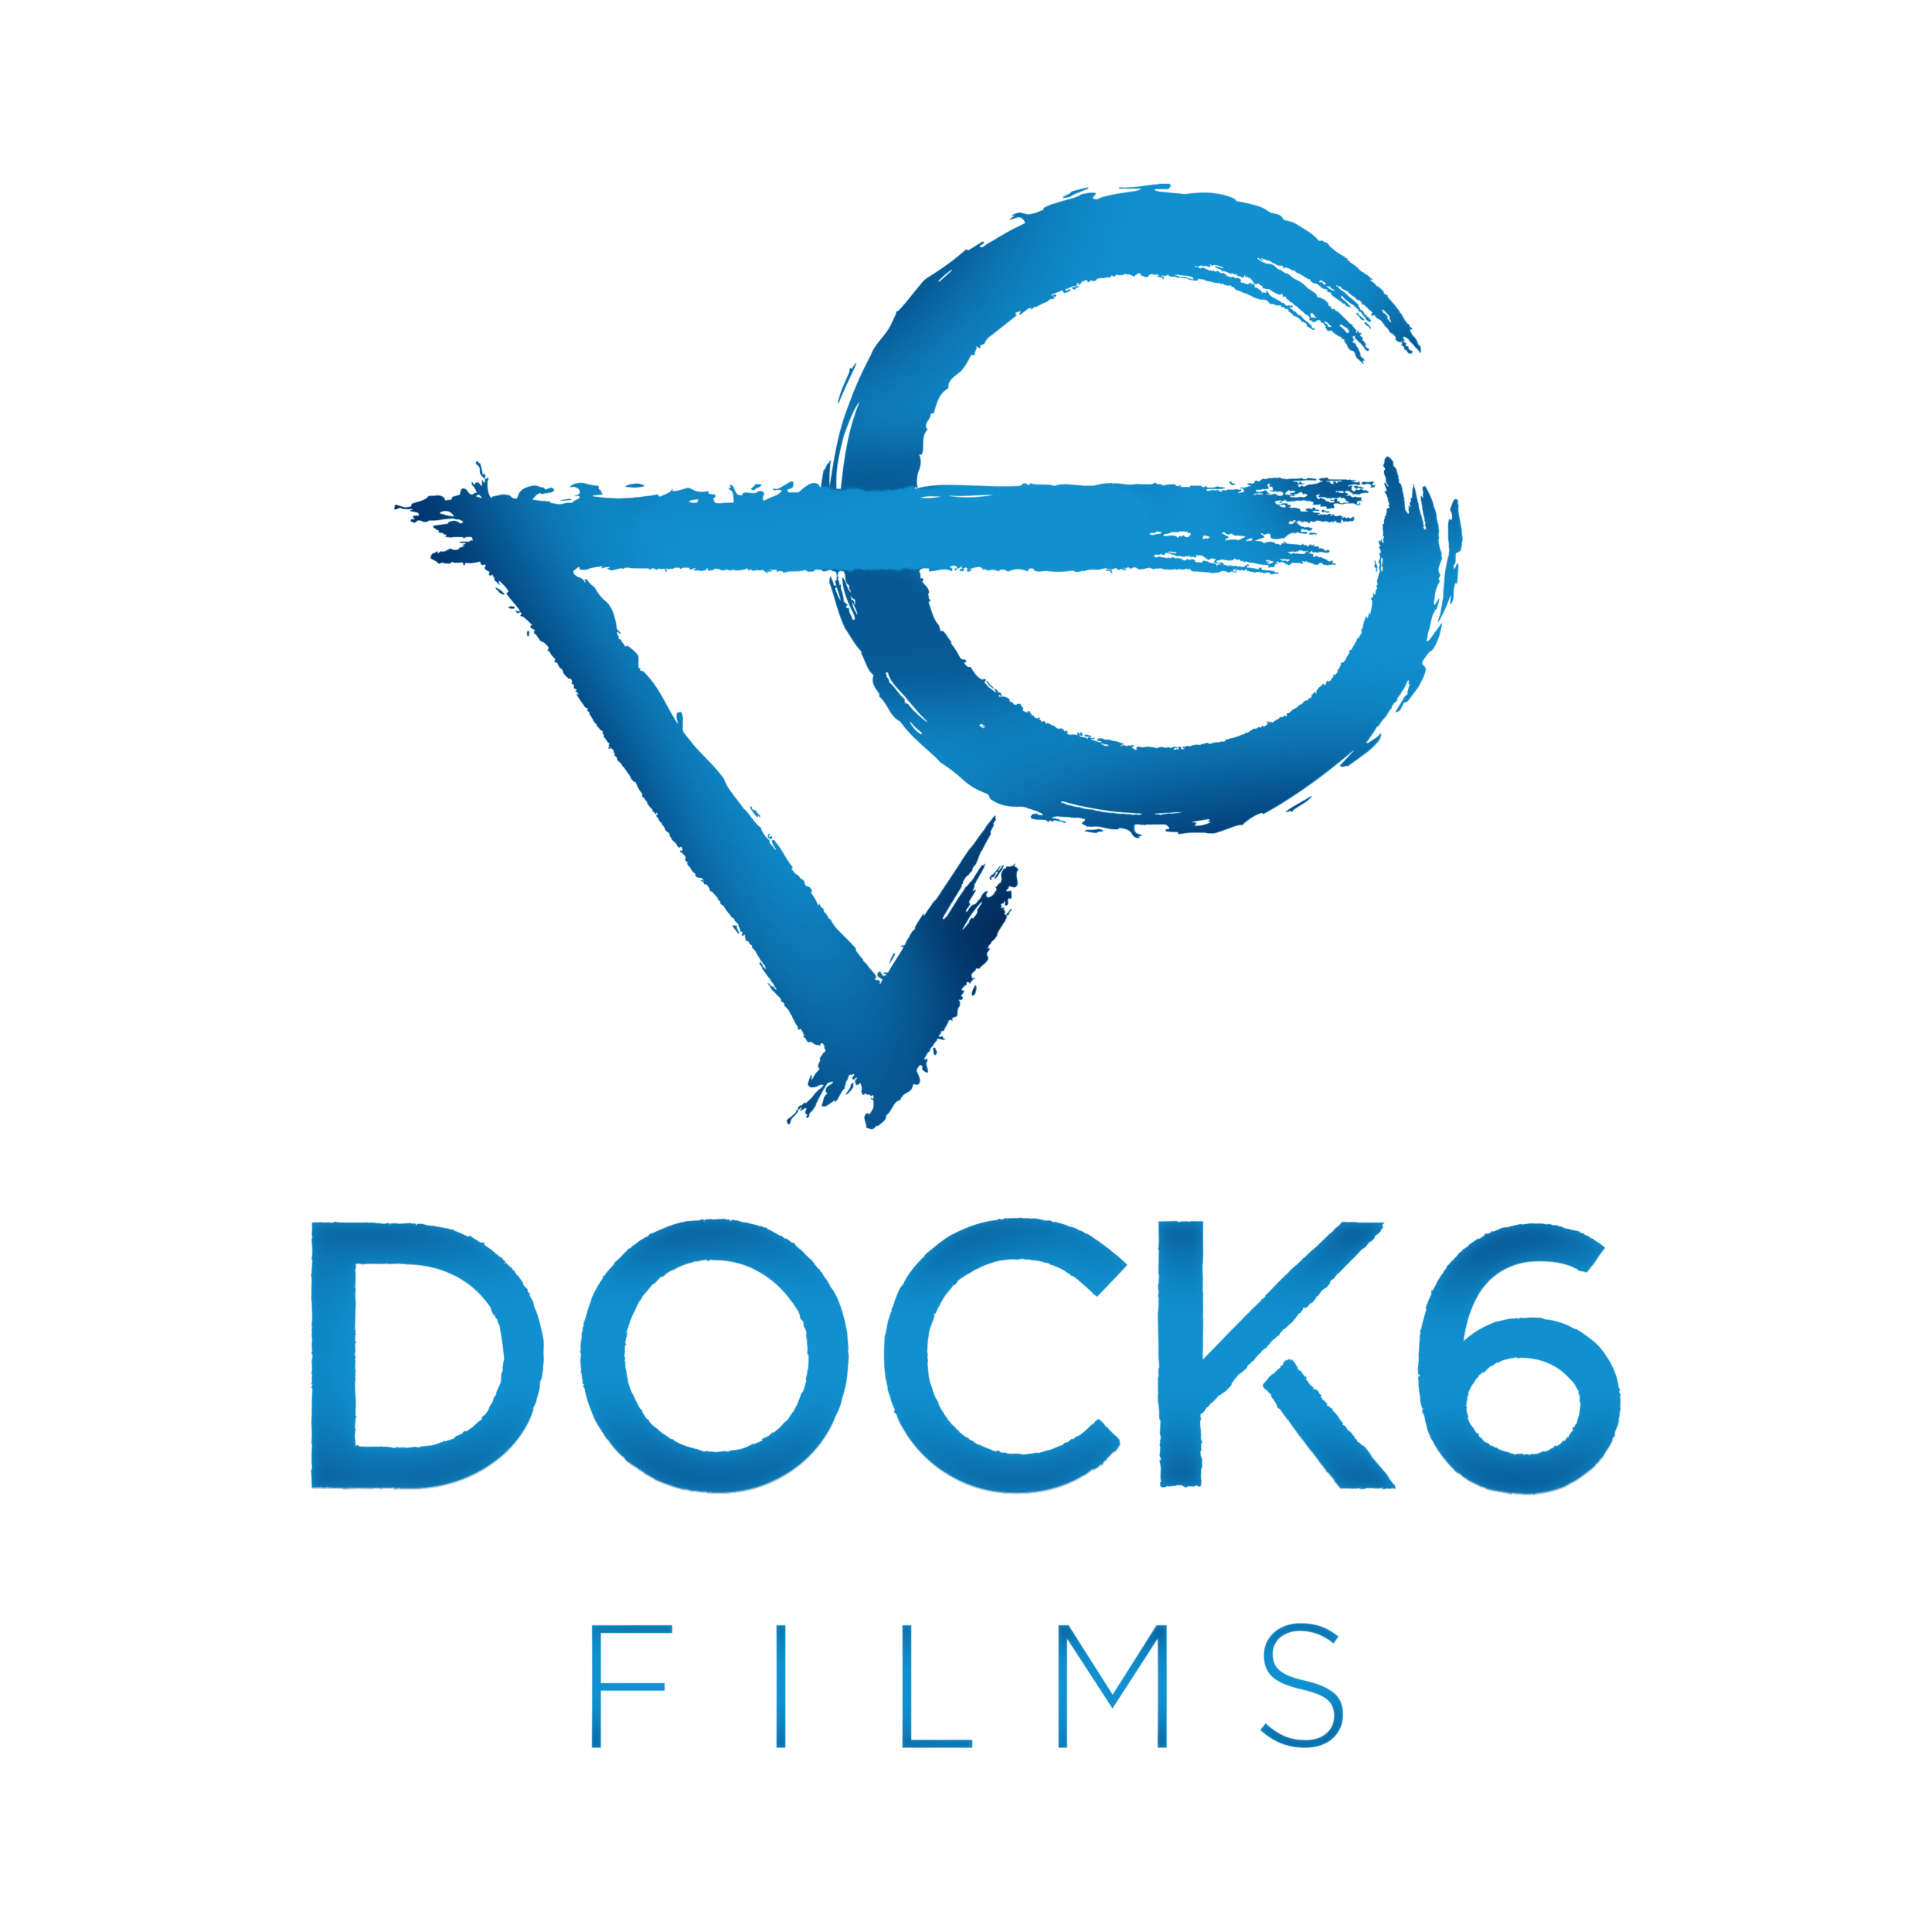 Dock 6 Films